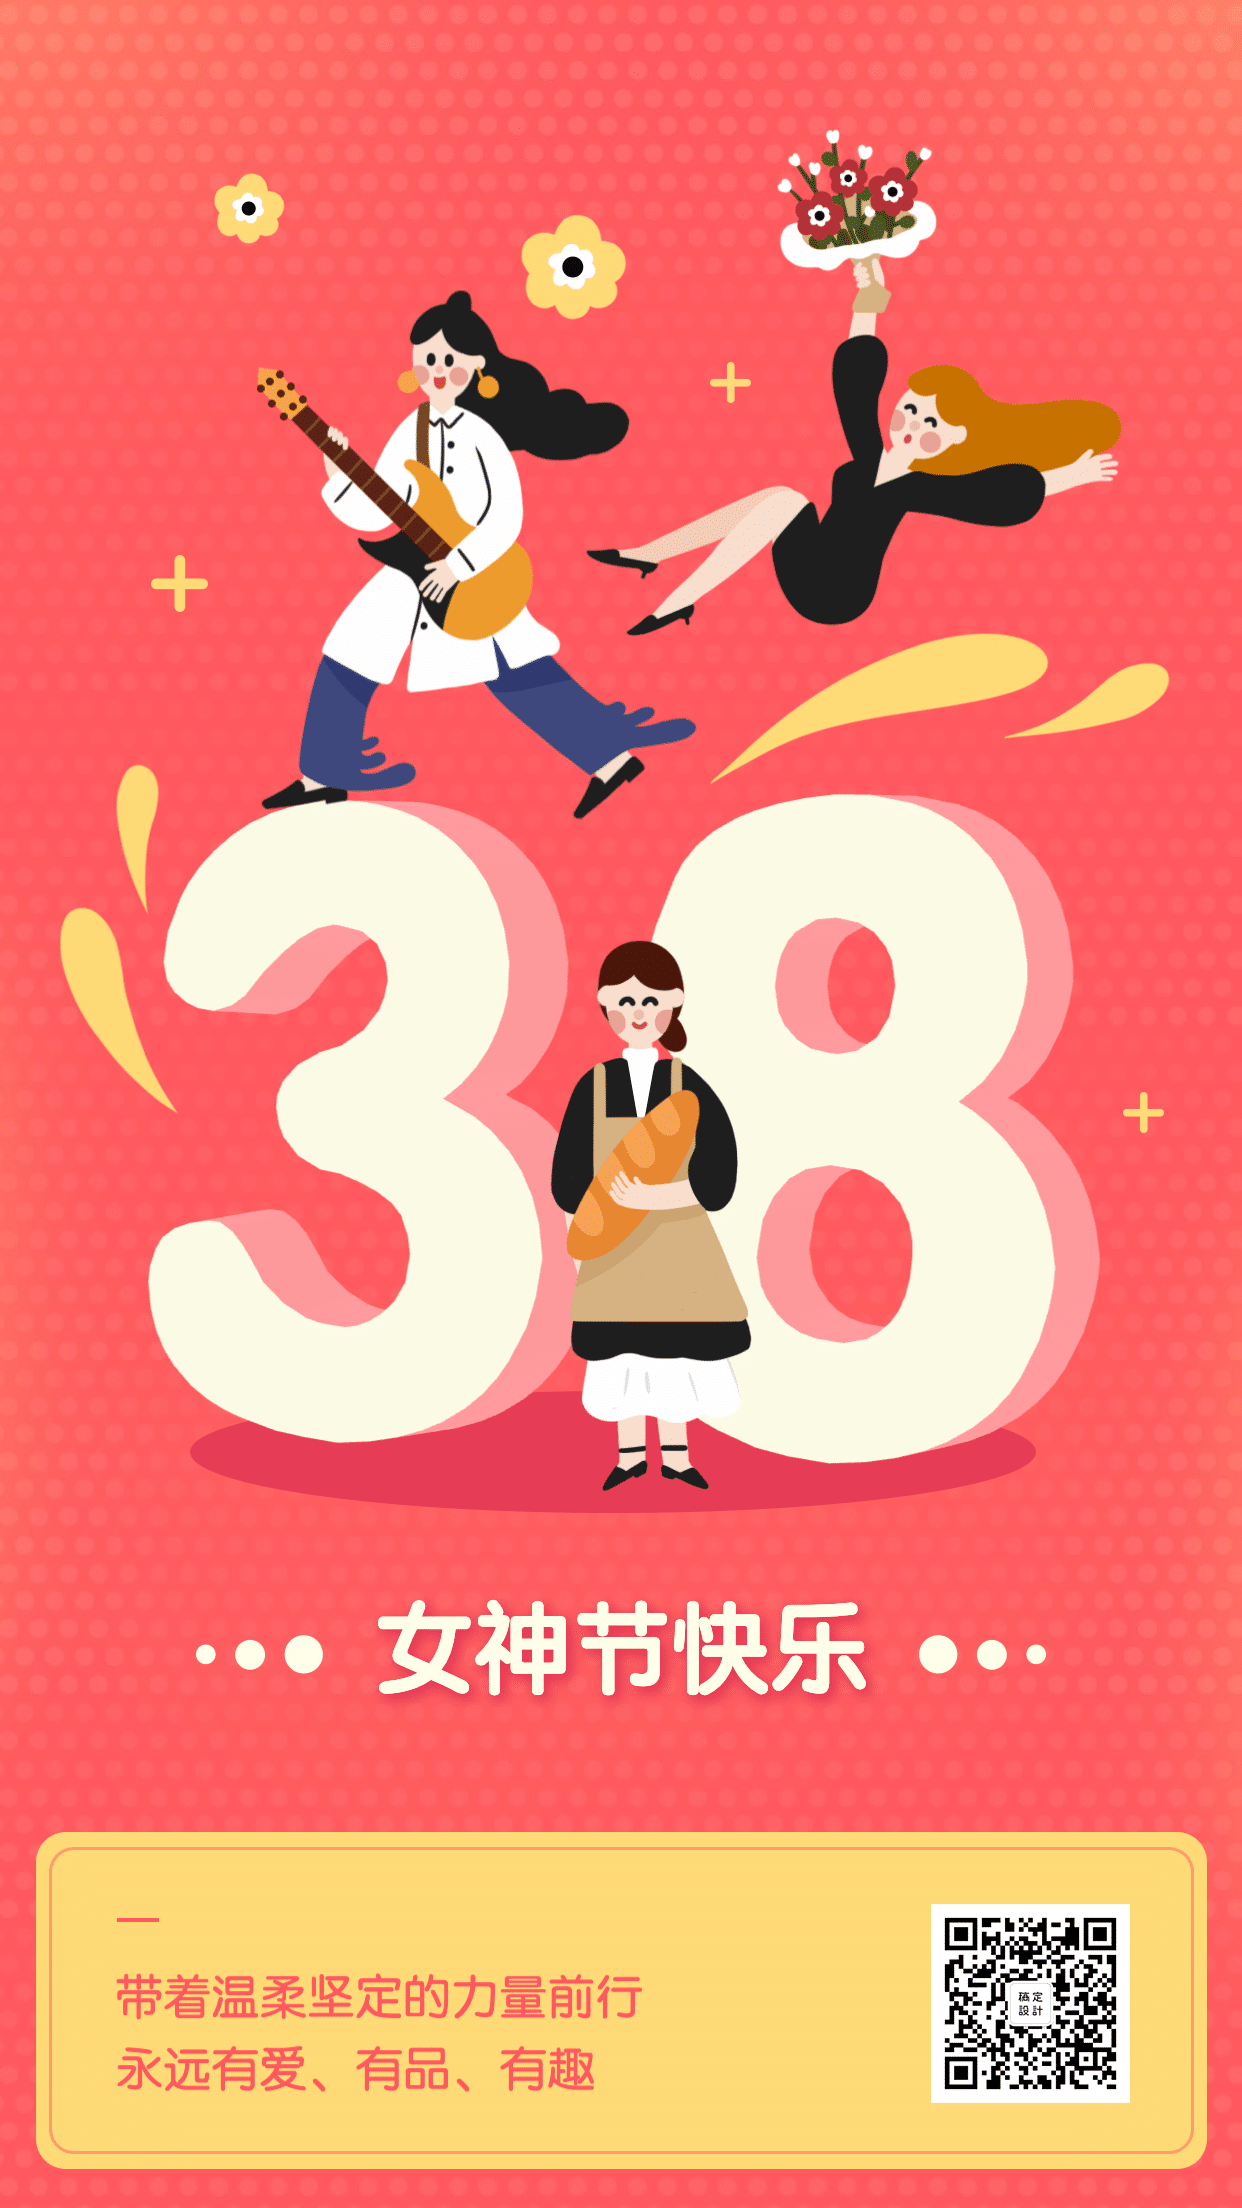 38妇女节快乐创意3D插画祝福海报预览效果